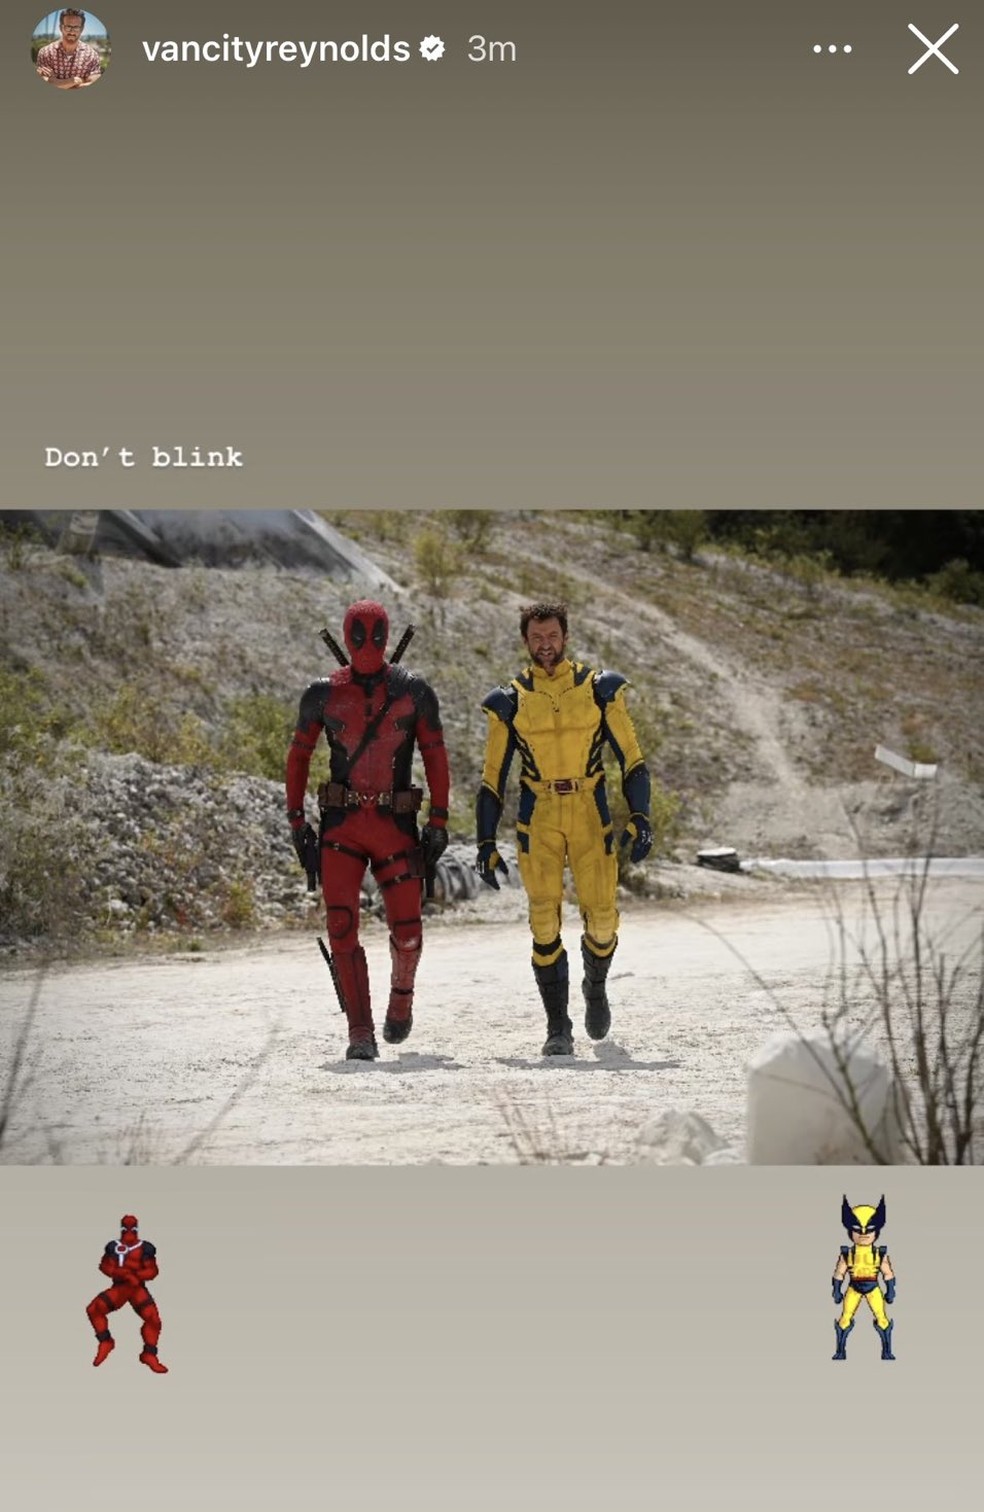 Deadpool 3 - Filme ganha data de lançamento e terá Wolverine de Hugh  Jackman!